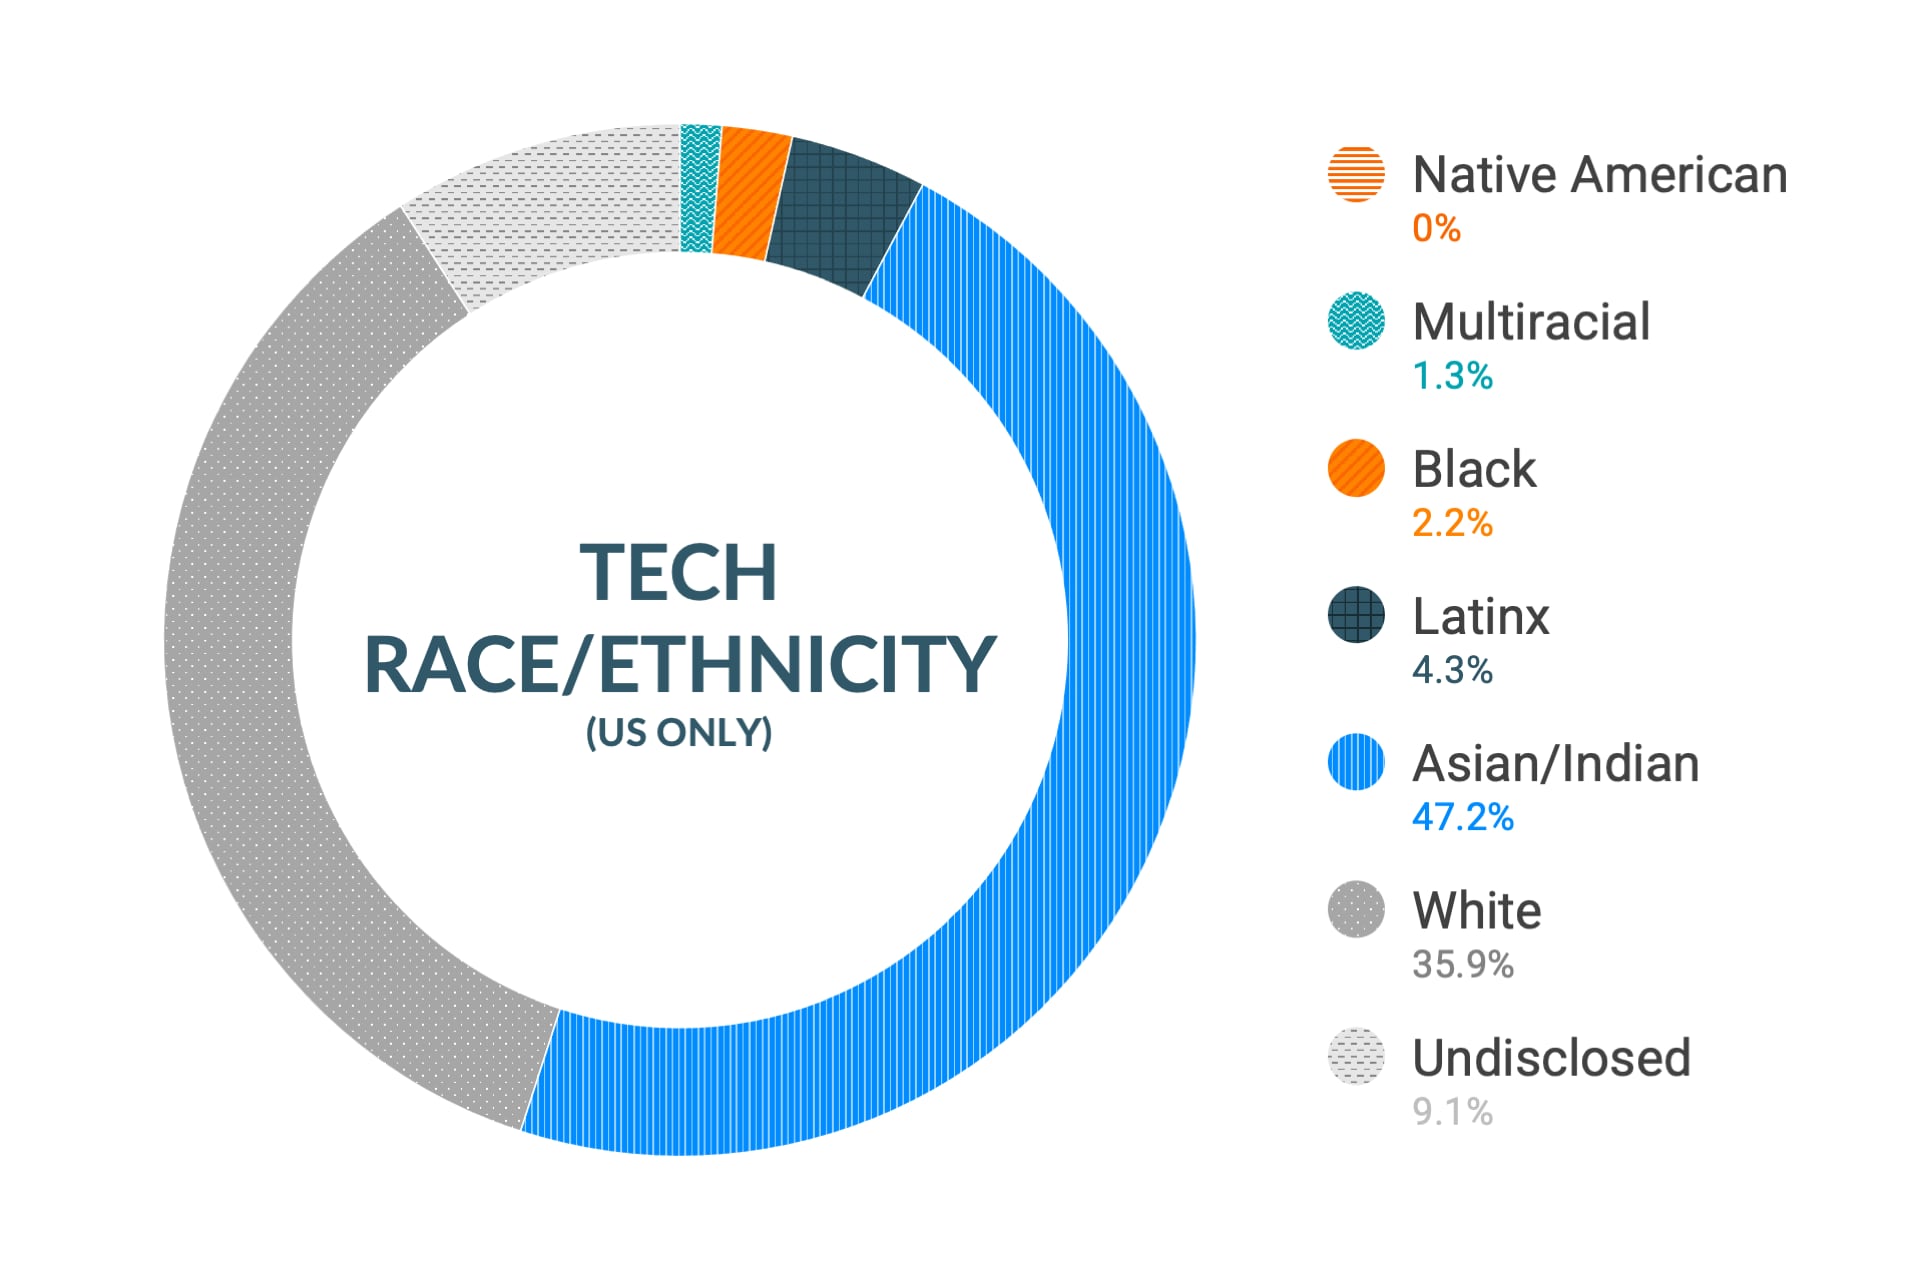 Dati Cloudera su diversità e inclusione etnica nei ruoli tecnici e ingegneristici: nativi americani 0%, multietnici 1,6%, afroamericani 2,3%, latinoamericani 2,9%, asiatici e indiani 46,7%, bianchi 37,6%, non dichiarato 8,9%.